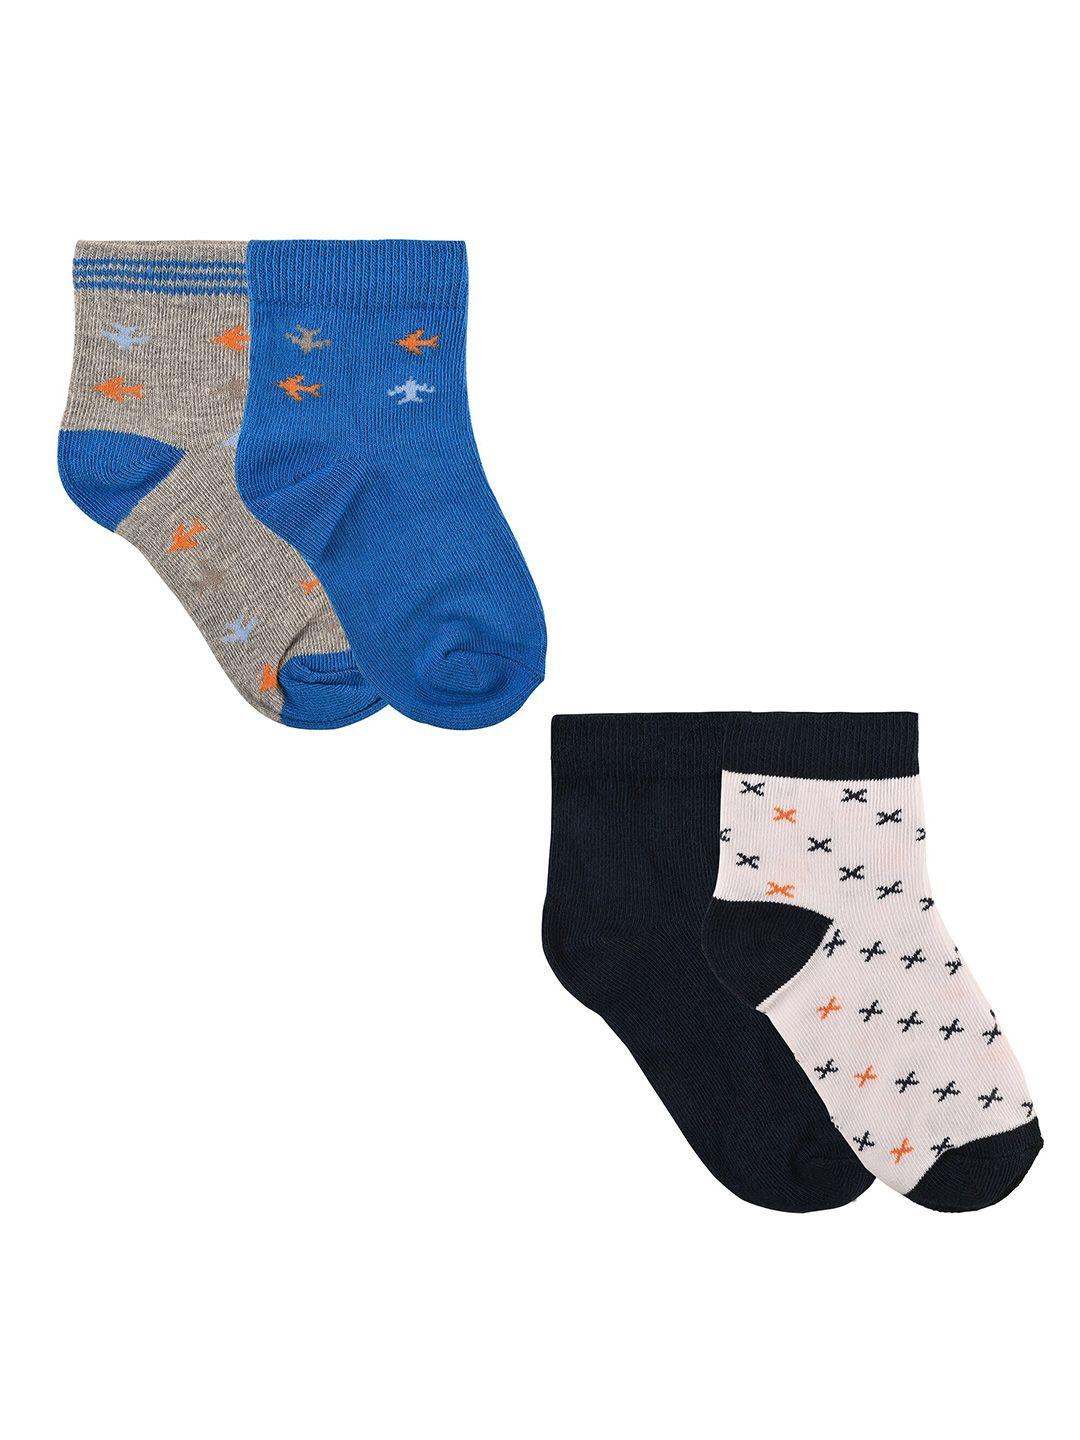 nuluv-boys-set-of-4-patterned-ankle-length-socks